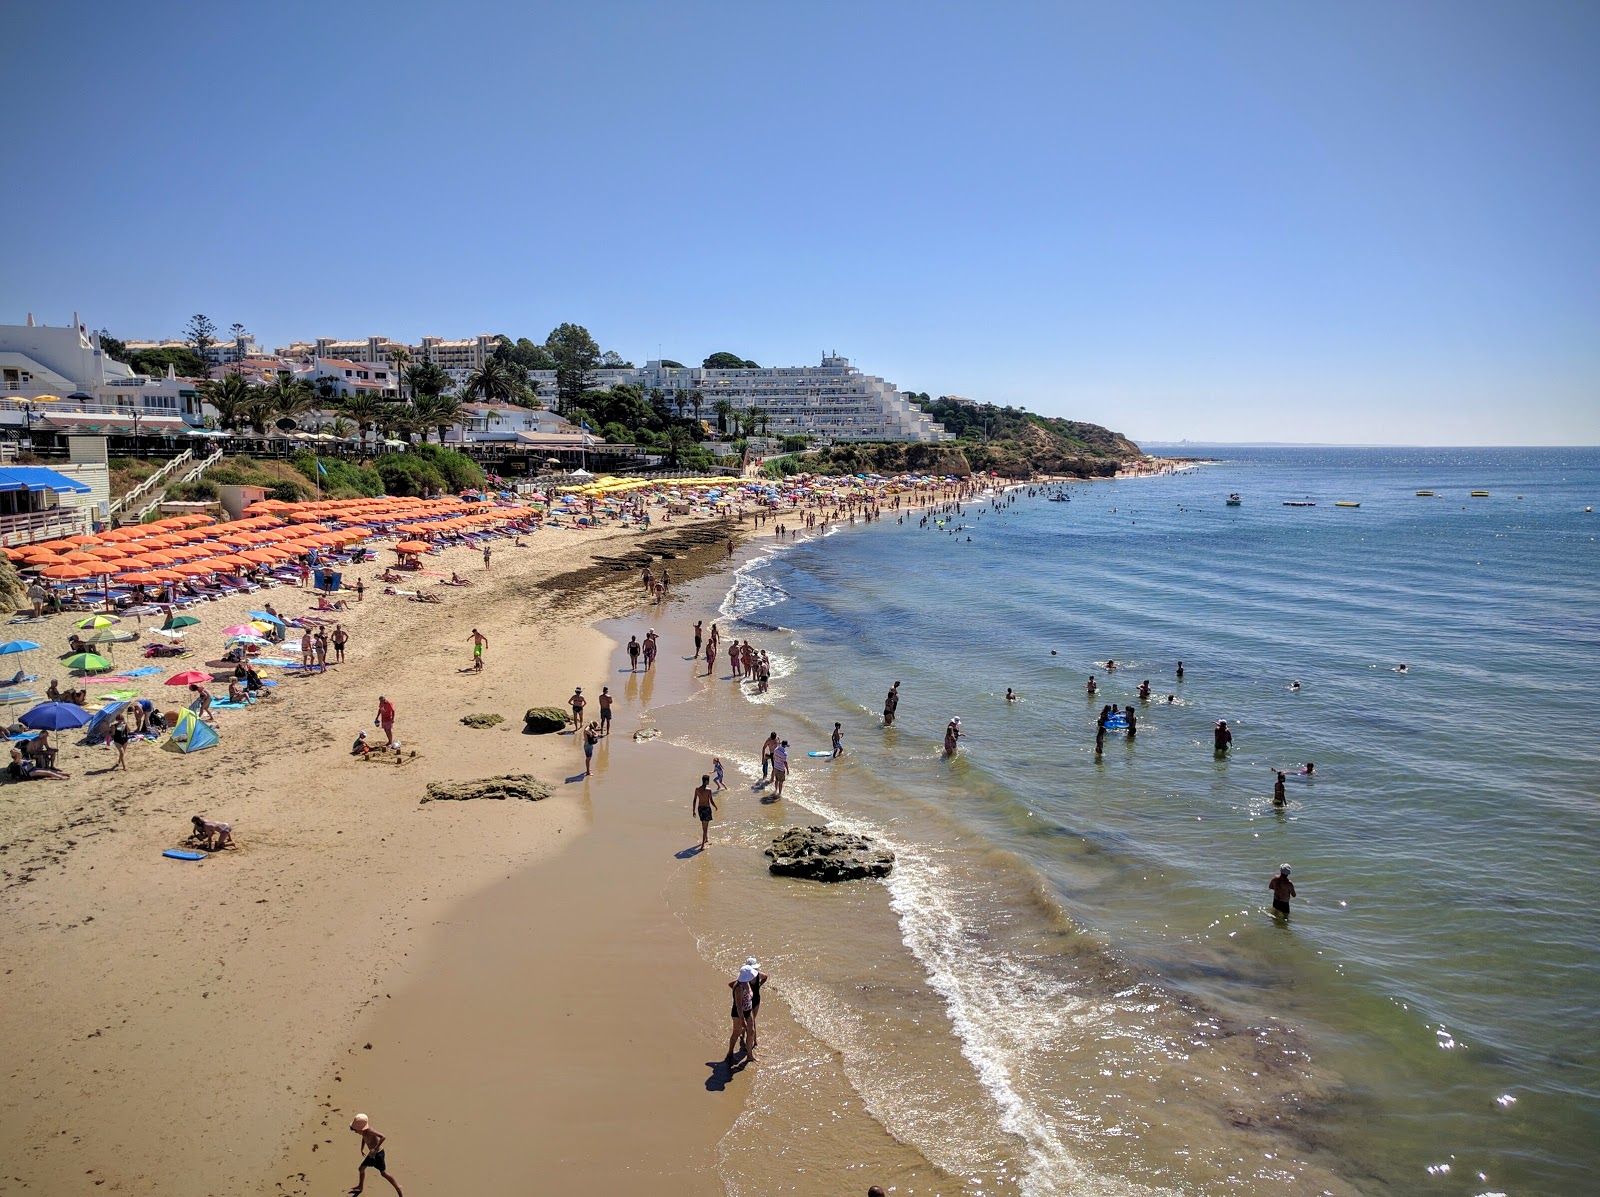 Praia da Oura'in fotoğrafı - rahatlamayı sevenler arasında popüler bir yer